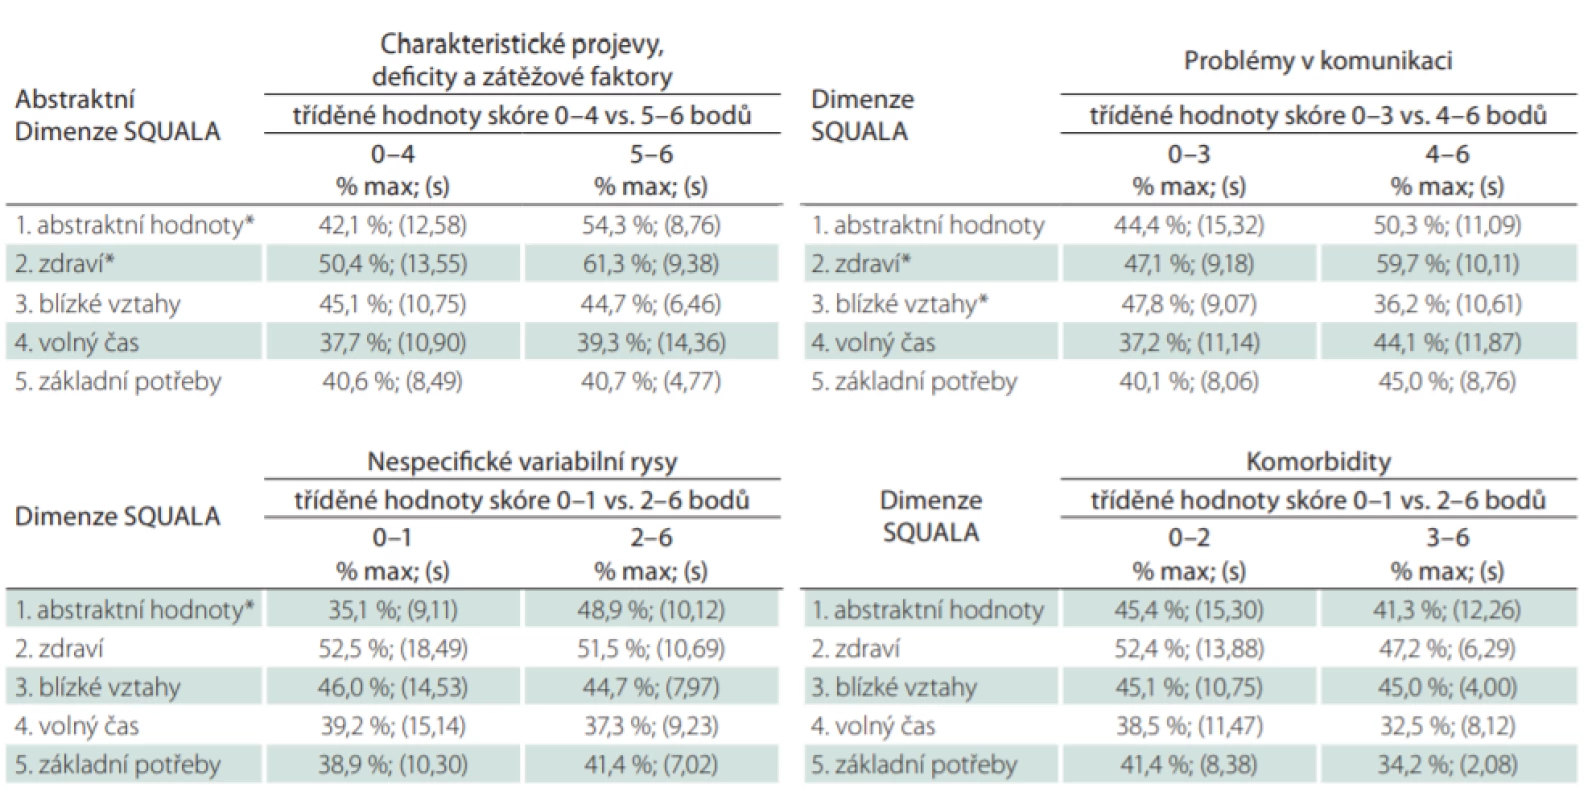 Celková skóre SQUALA kalkulovaná pro standardizované dimenze (vyjádřeno jako % maximálně dosažitelné hodnoty doplněné odhadem směrodatné odchylky). Tříděno dle kategorií hodnot navržených kumulativních skóre vyjadřujících tíži postižení
pacienta s poruchou autistického spektra.